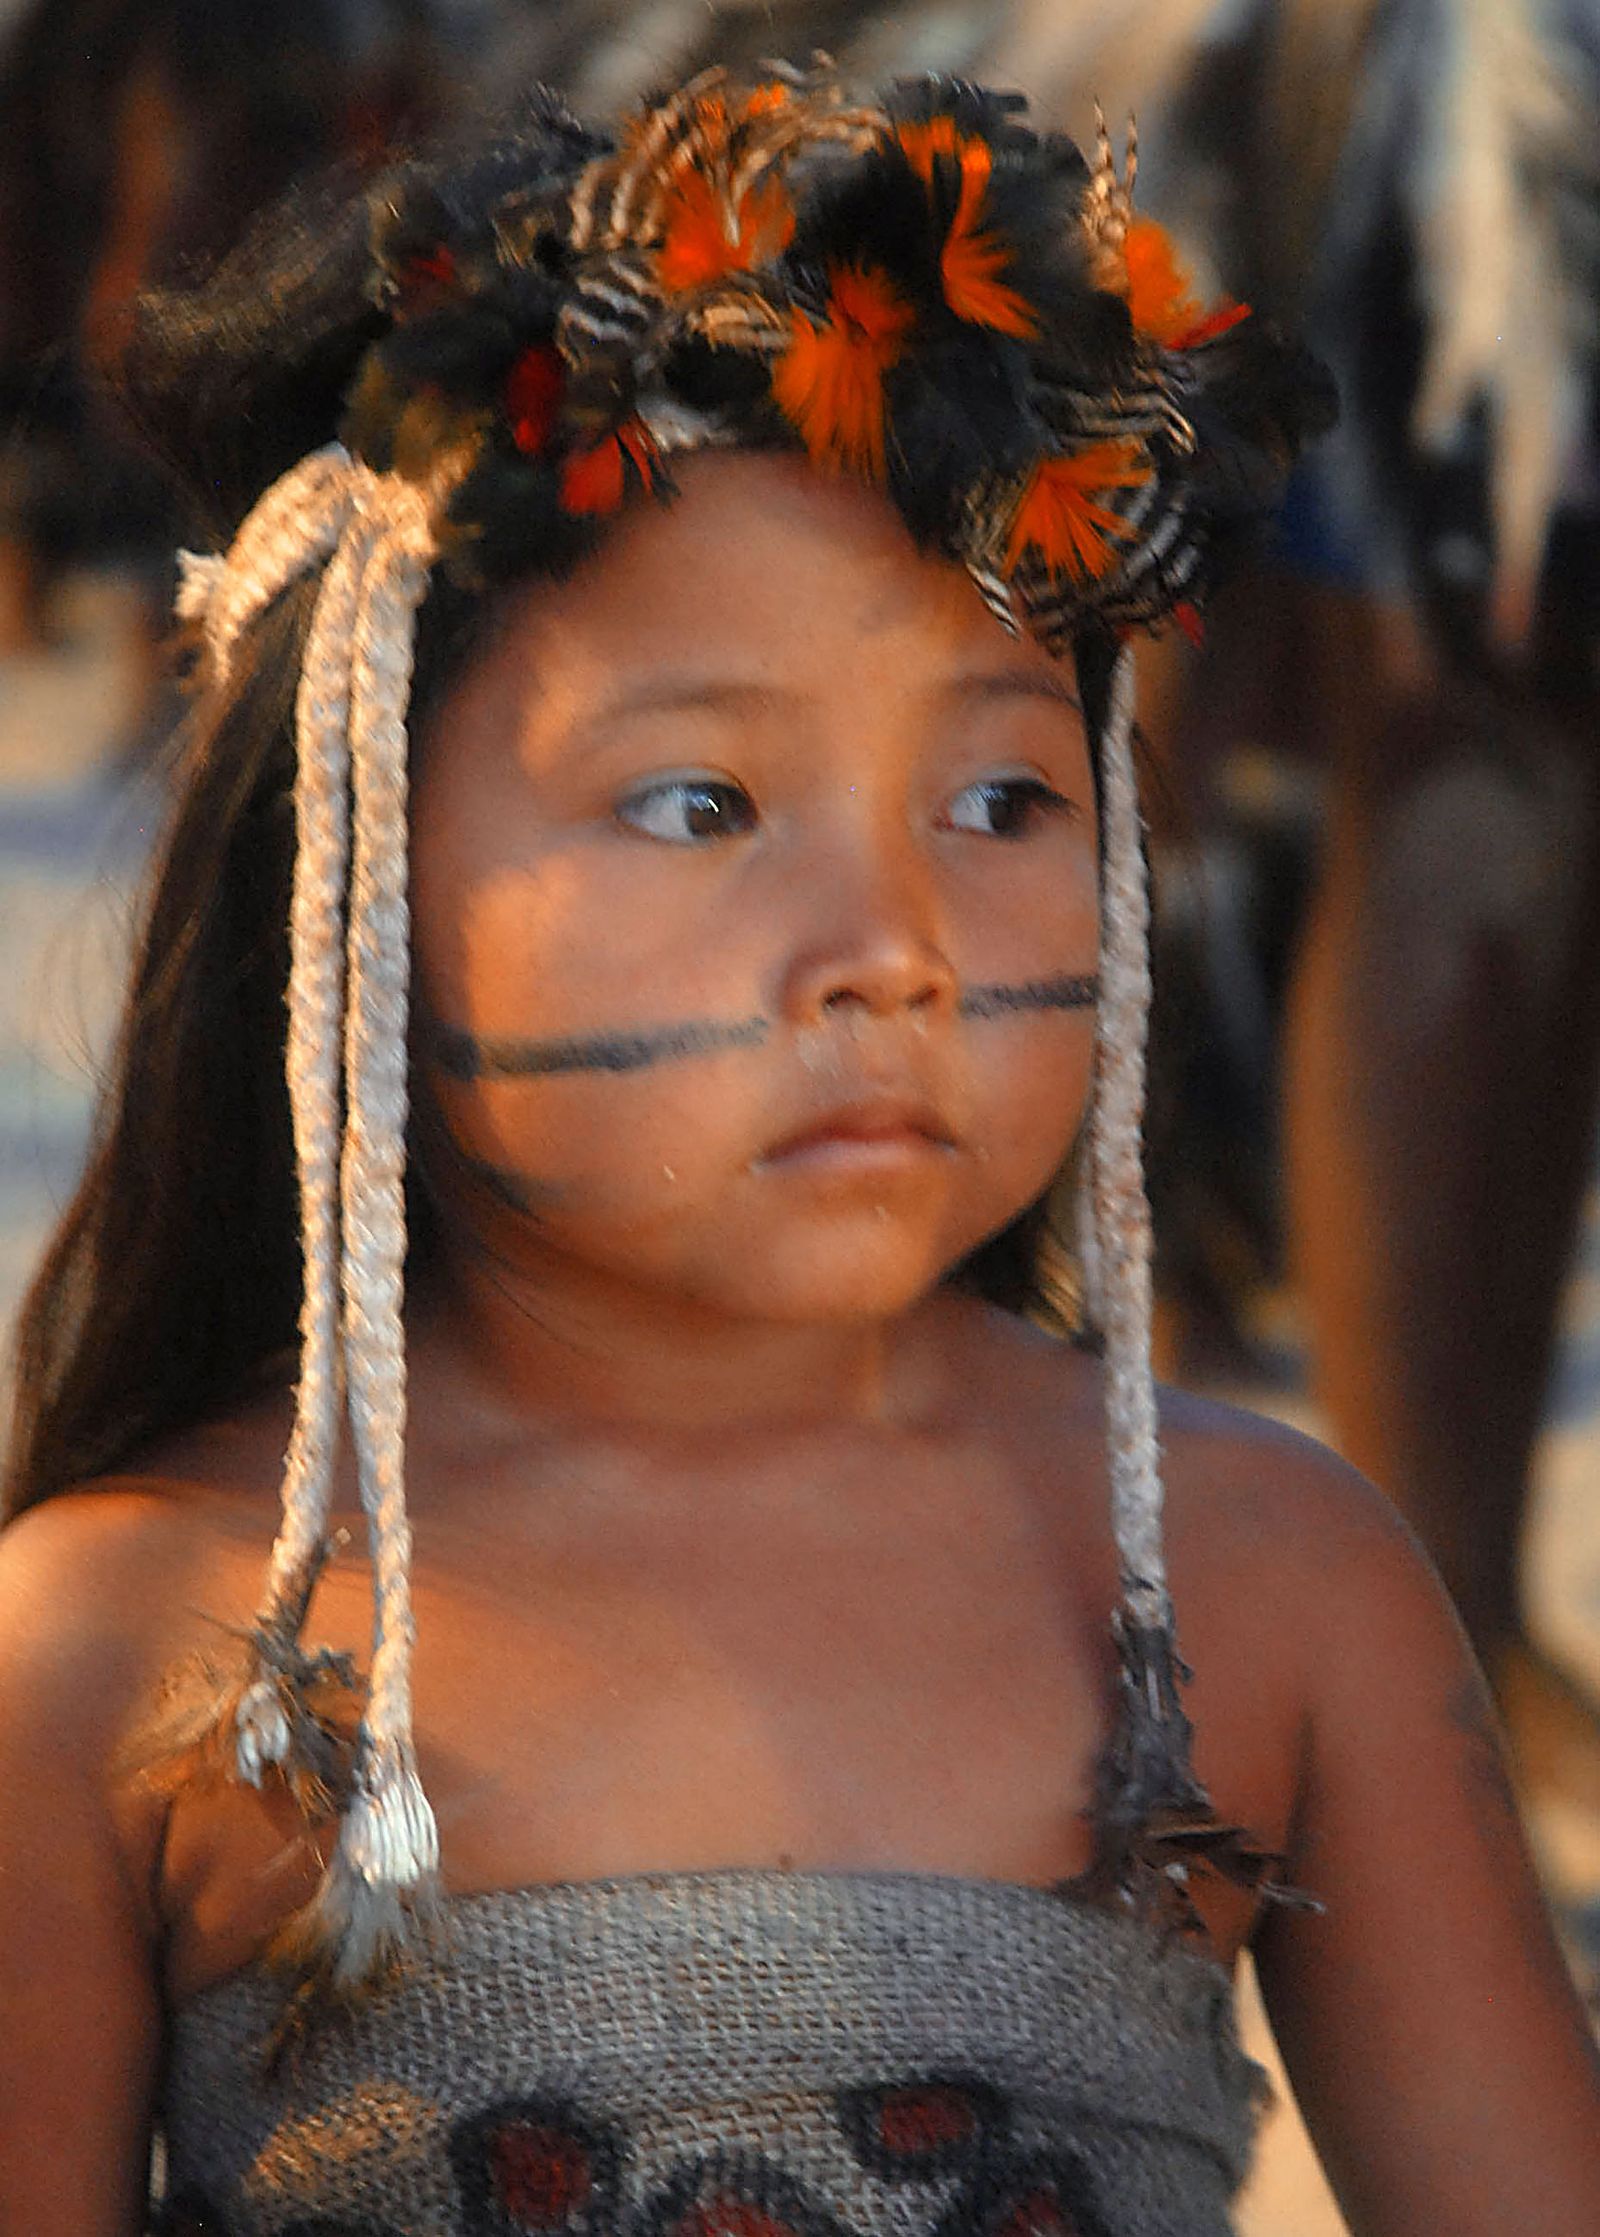 Niños indígenas corren riesgo a que le sean vulnerados sus derechos